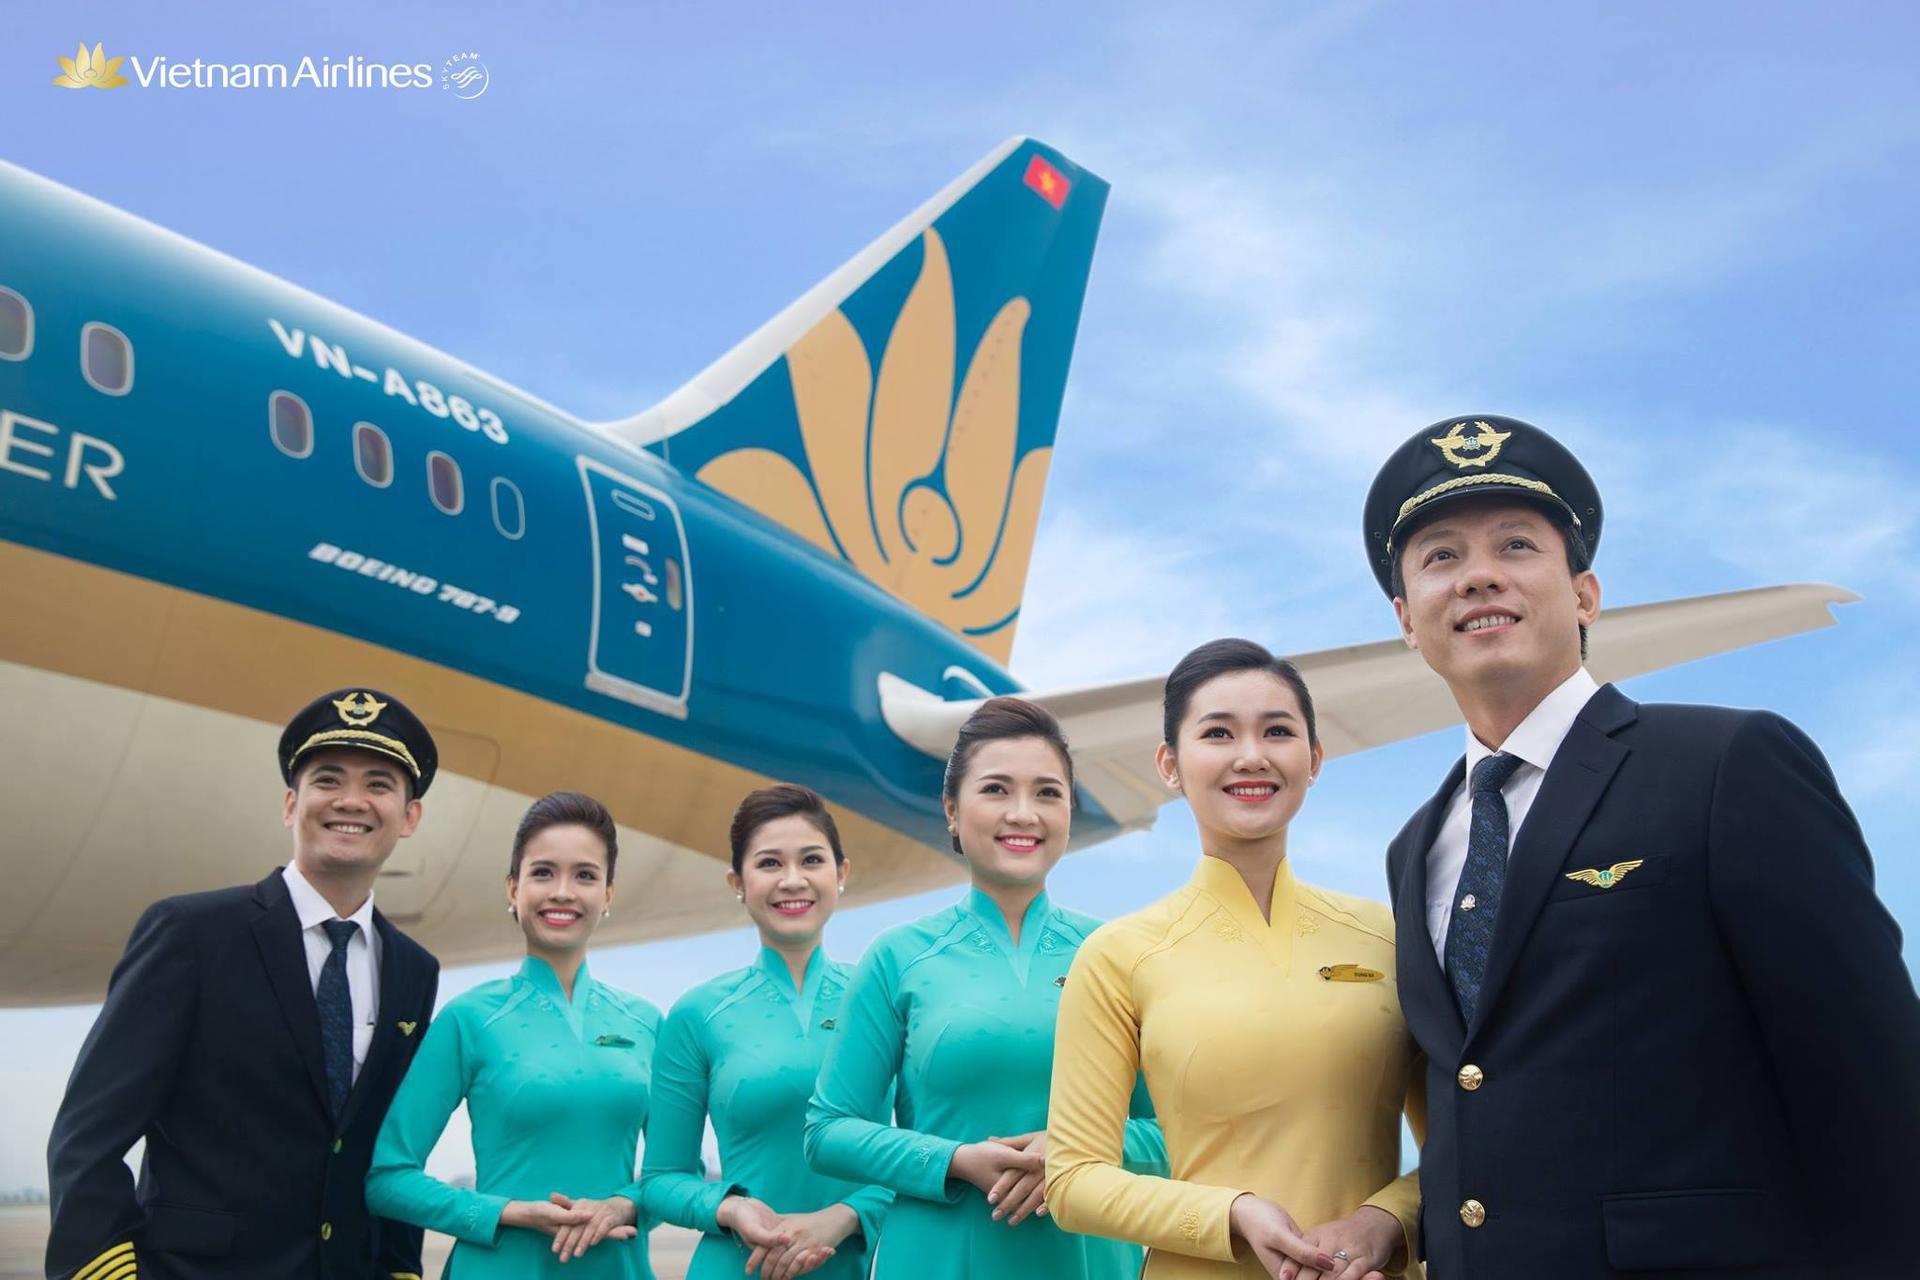 mua vé máy bay vietnam airlines giá rẻ